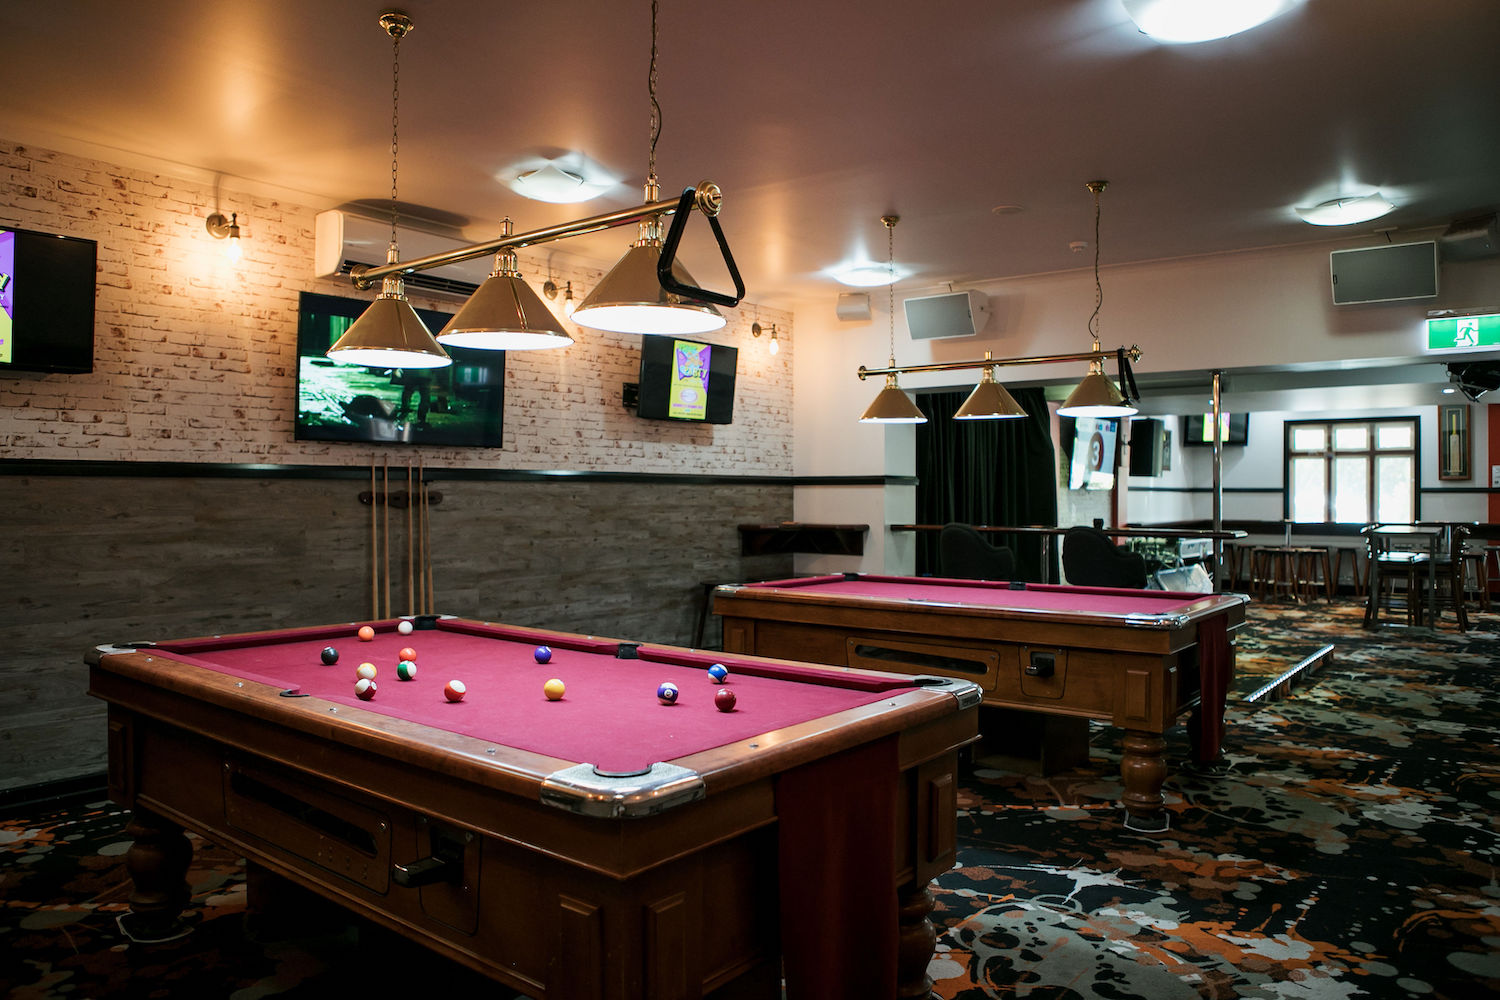 beerwah-hotel-pool-table-sports-bar.jpg